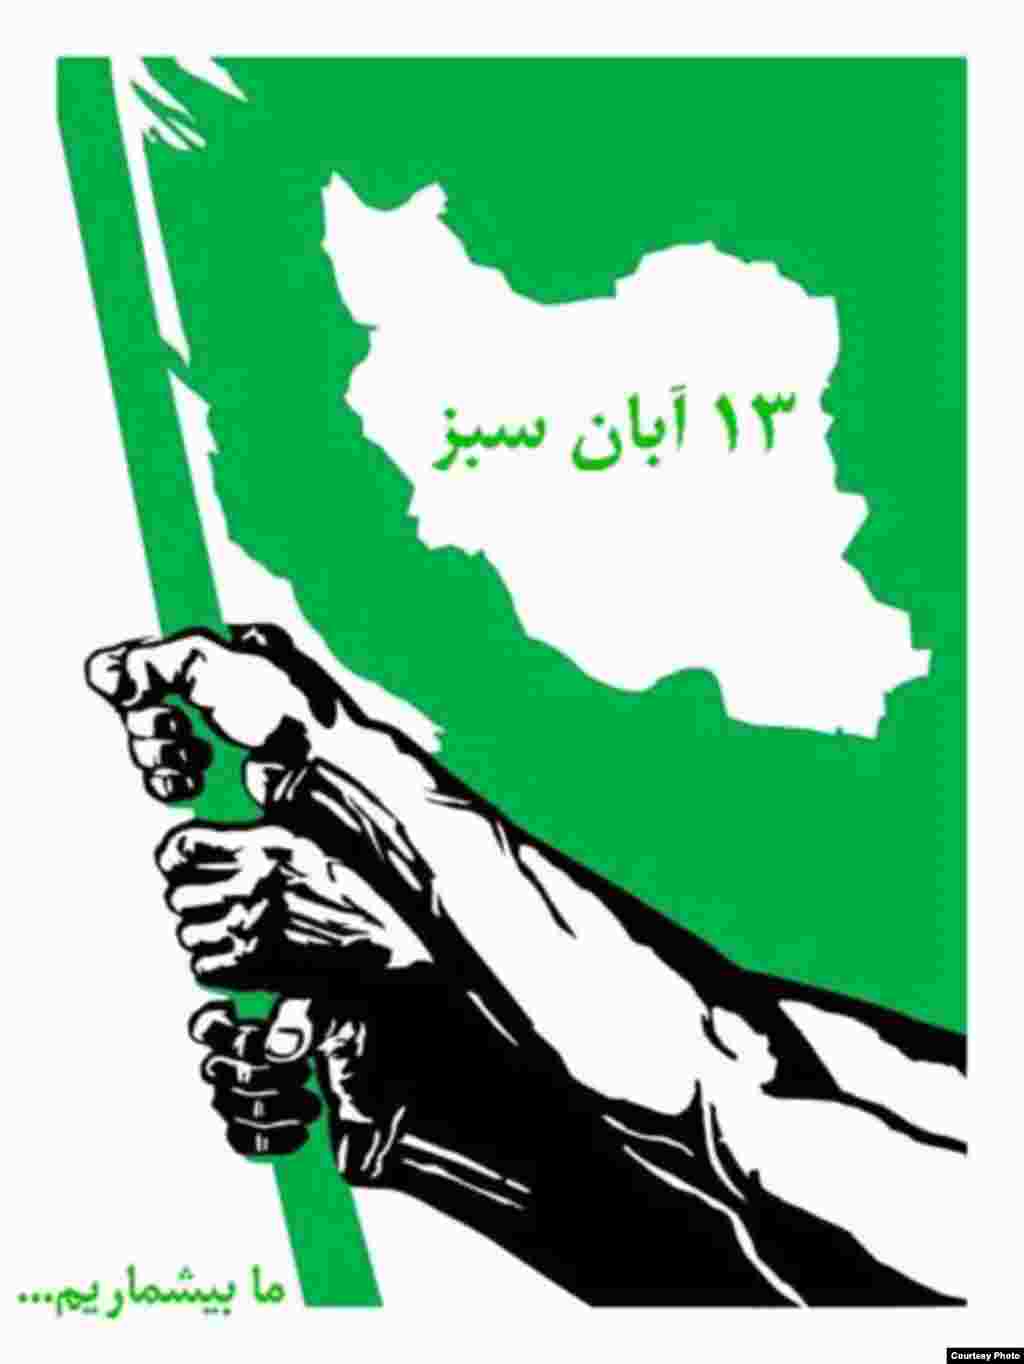 میرحسین موسوی، از رهبران جنبش سبز ایران، ۱۳ آبان را سبزترین روز سال خواند، روزی که به گفته وی یادآور آن است که «مردم رهبران ما هستند». به دنبال این فراخوان هنرمندان هم‌صدا با جنبش سبز دست به طراحی پوسترهایی برای این «سبزترین روز سال» زدند.